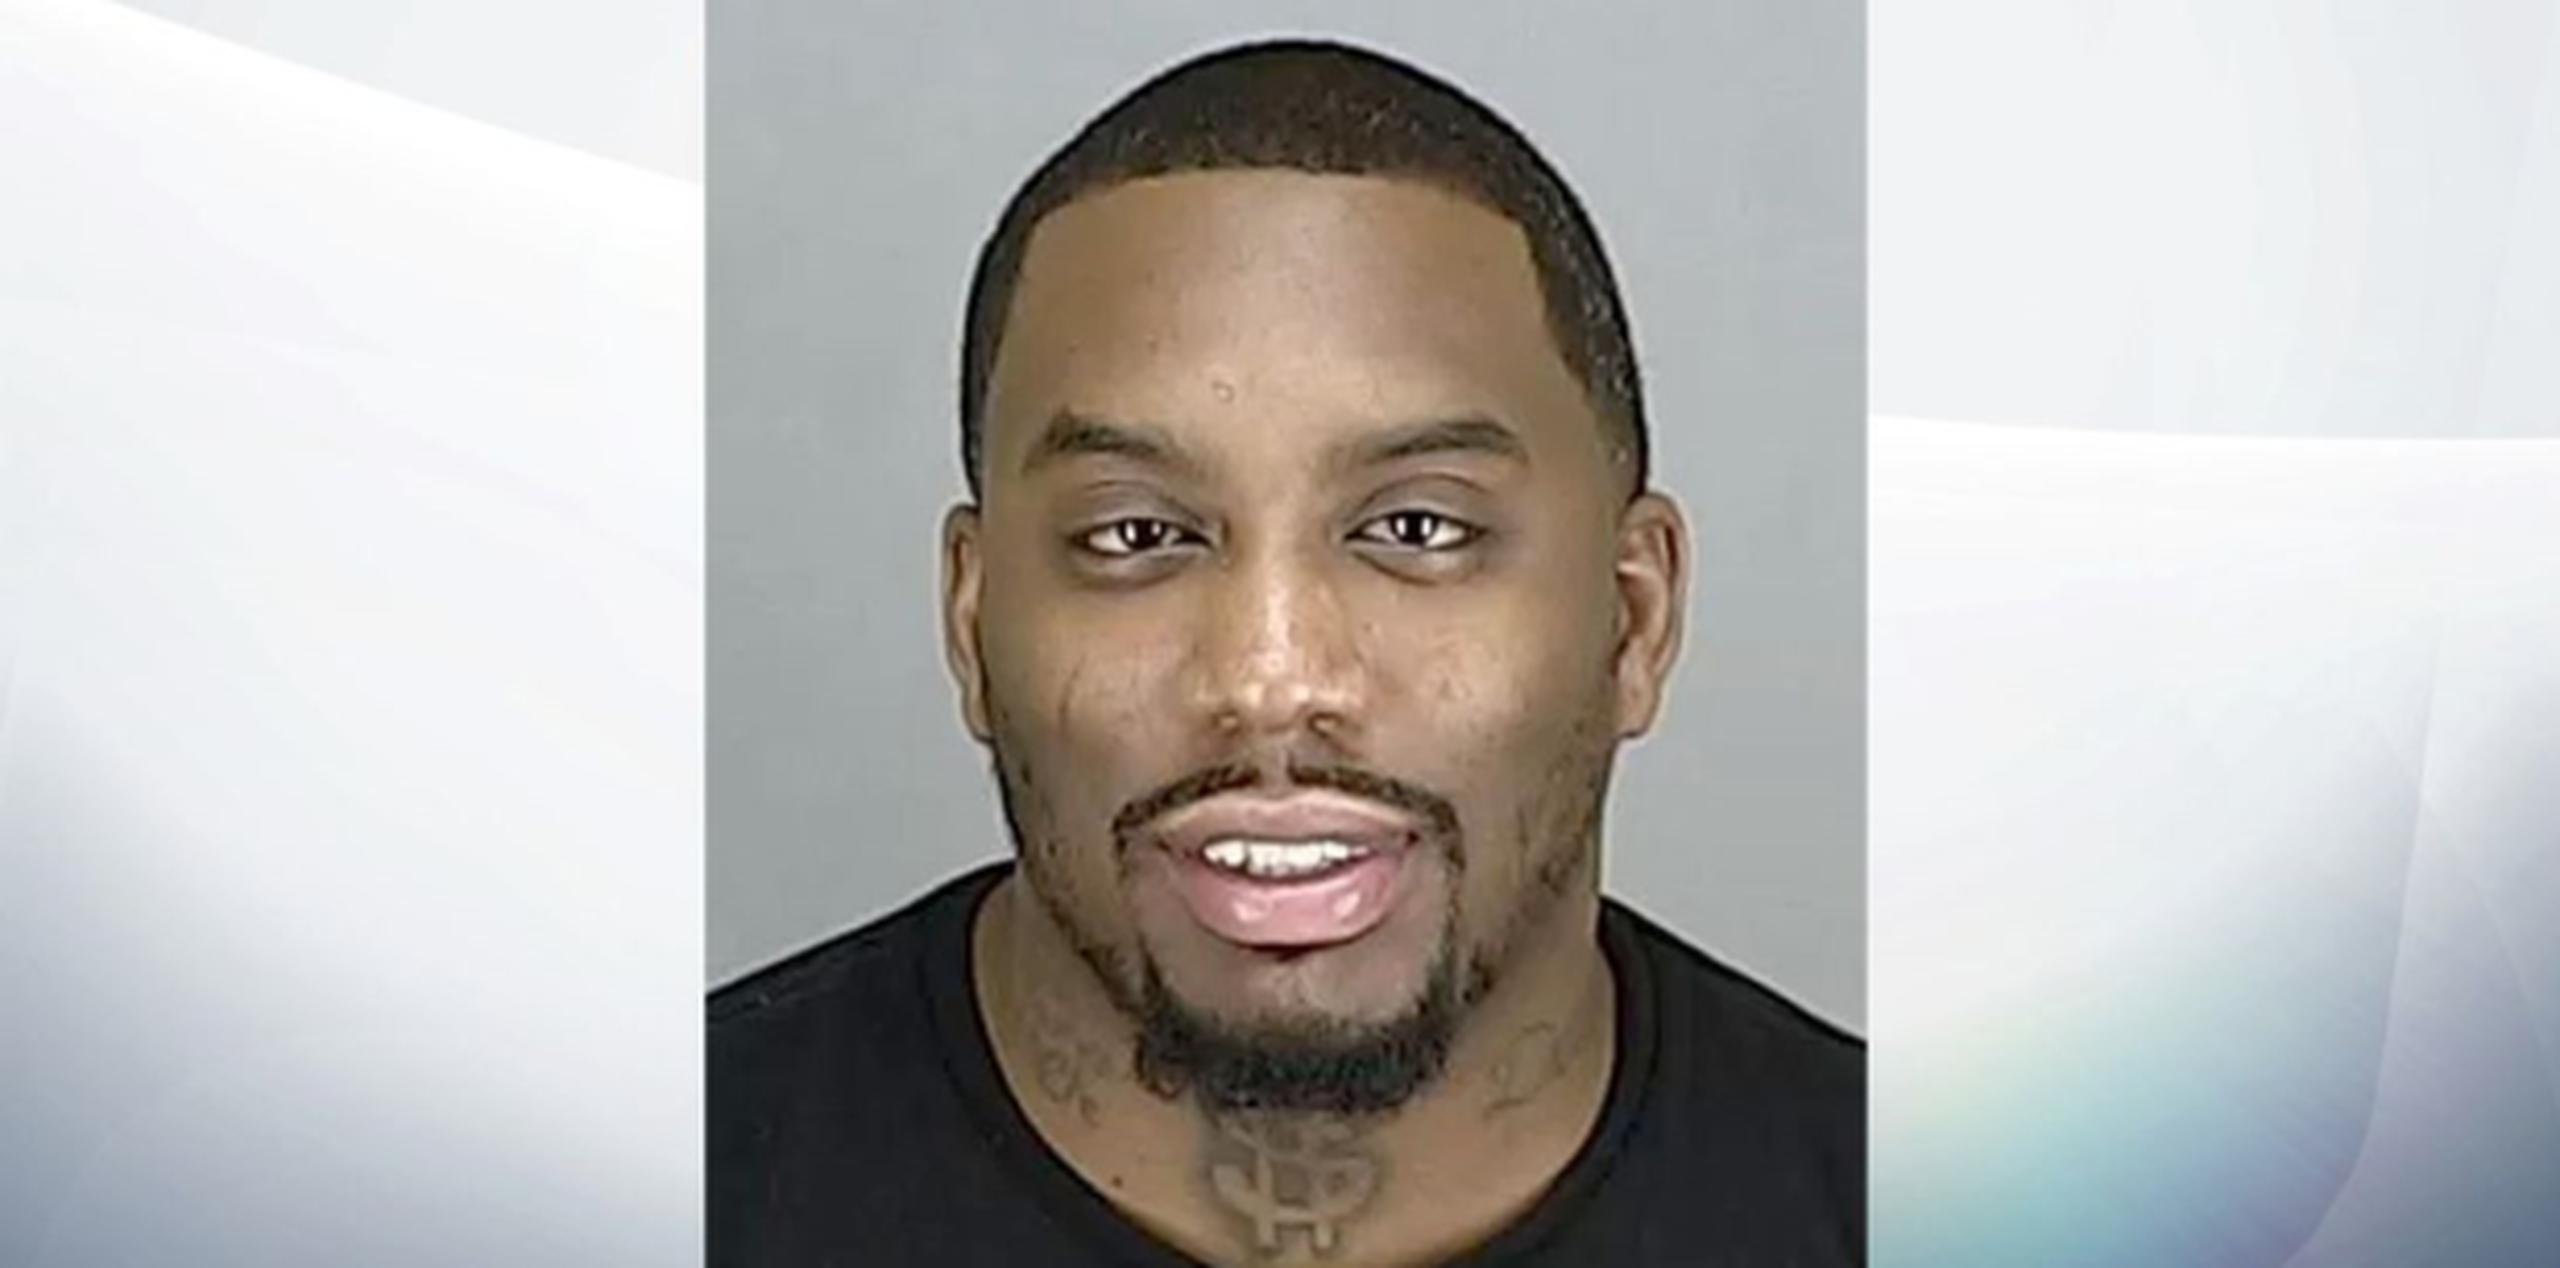 La policía informó que Darnell Bitting, de 31 años, fue detenido aproximadamente a las 4:00 de la tarde del sábado en Akron. (Policía de Ohio)